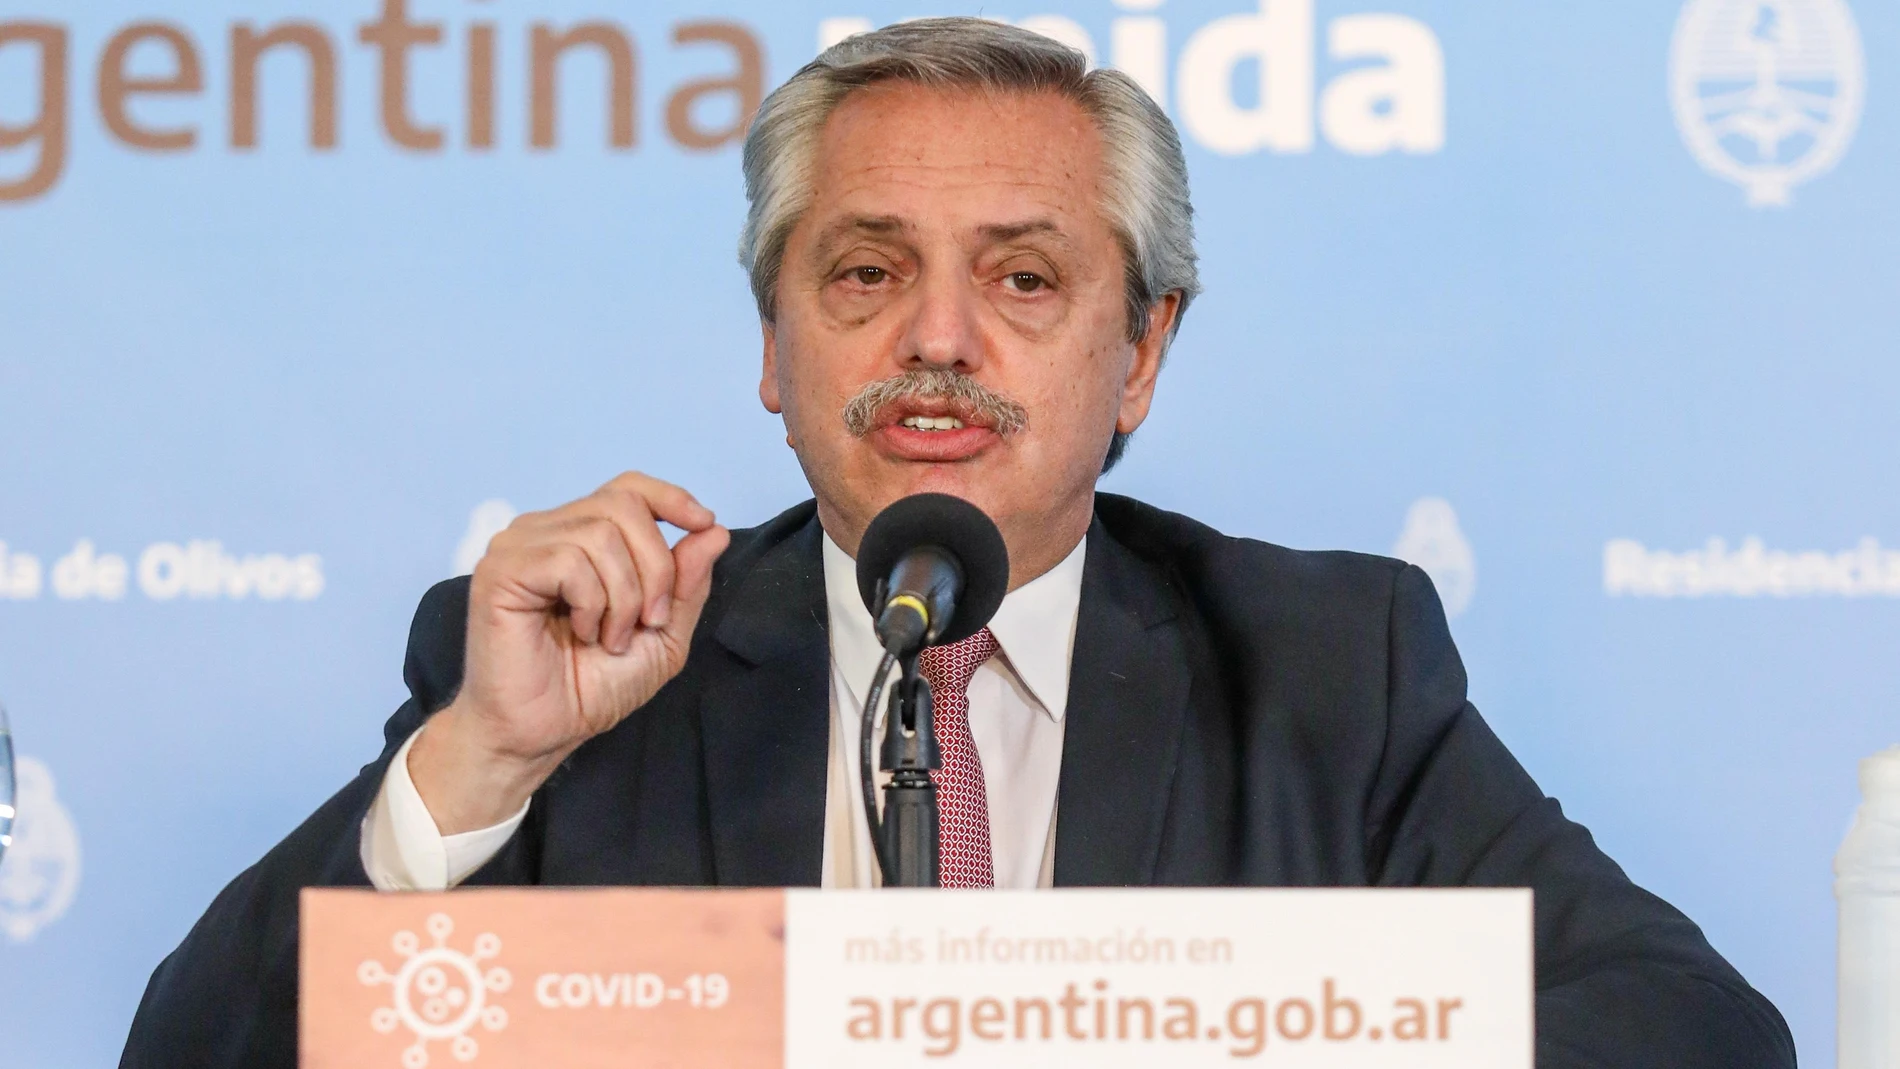 Fernández anuncia extensión de cuarentena en Argentina hasta el 21 de junio